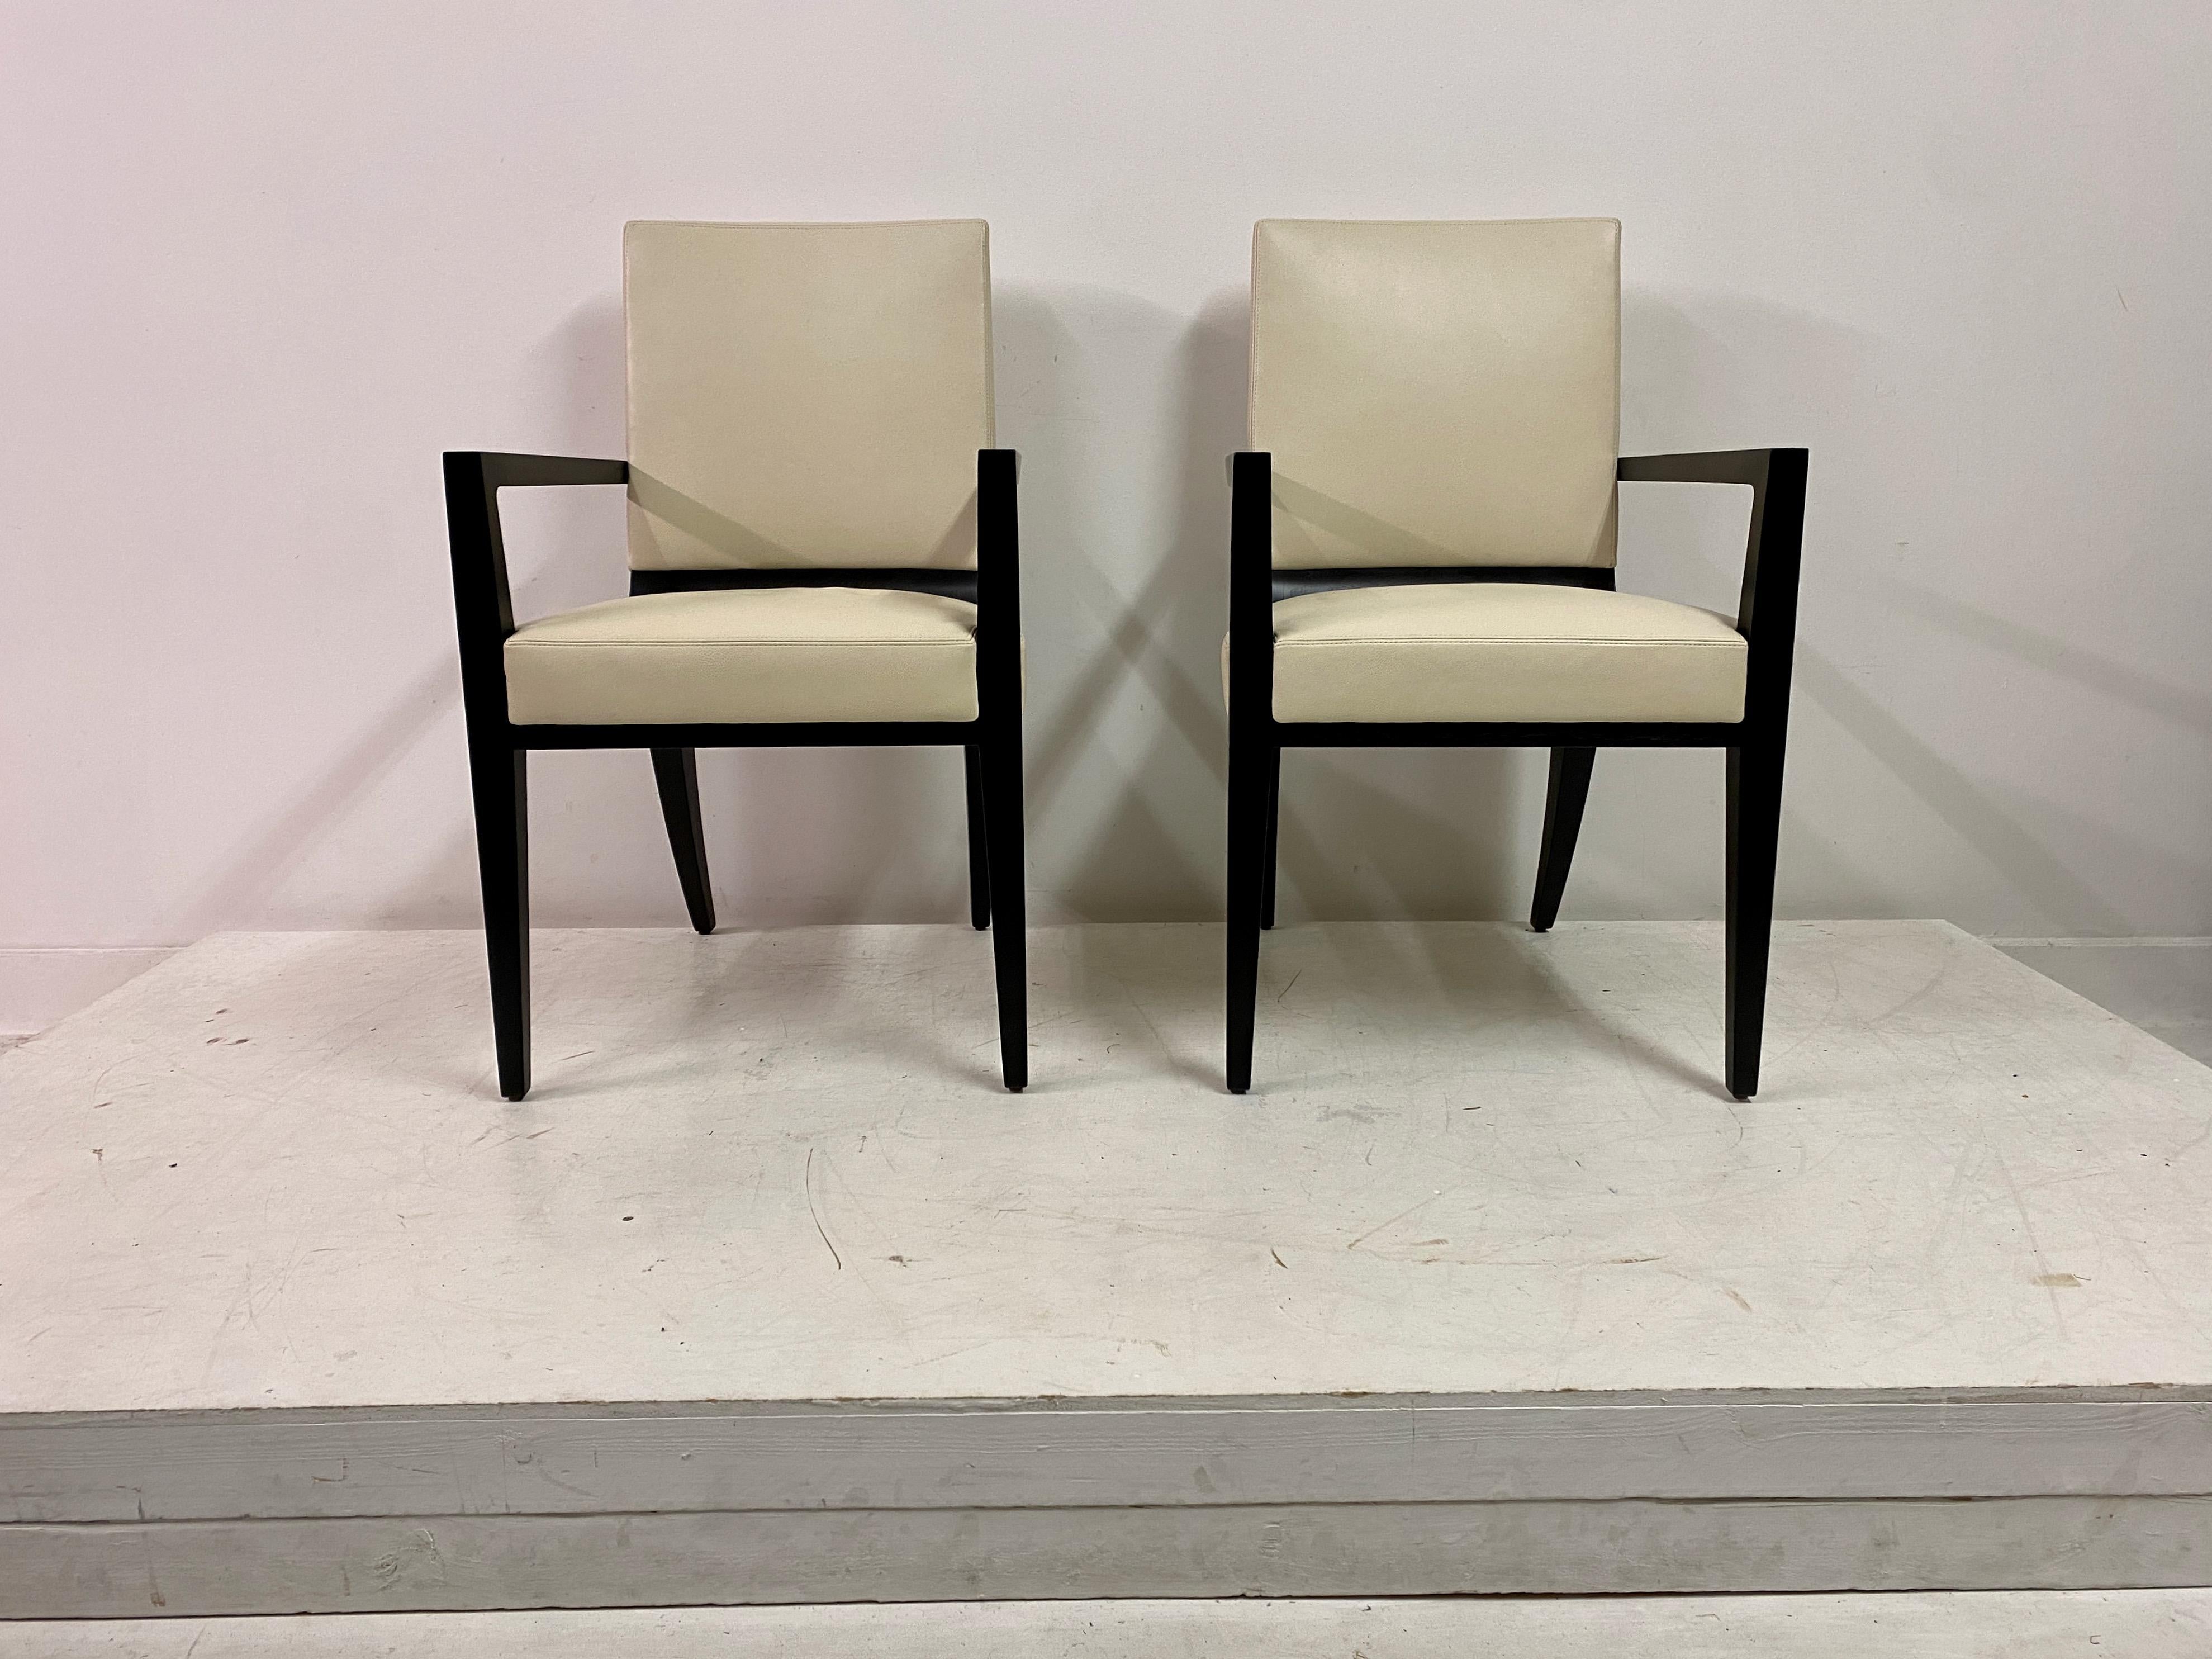 Paar Sessel

Modell Harris

Von Joseph Jeup

Zeitgenössische USA